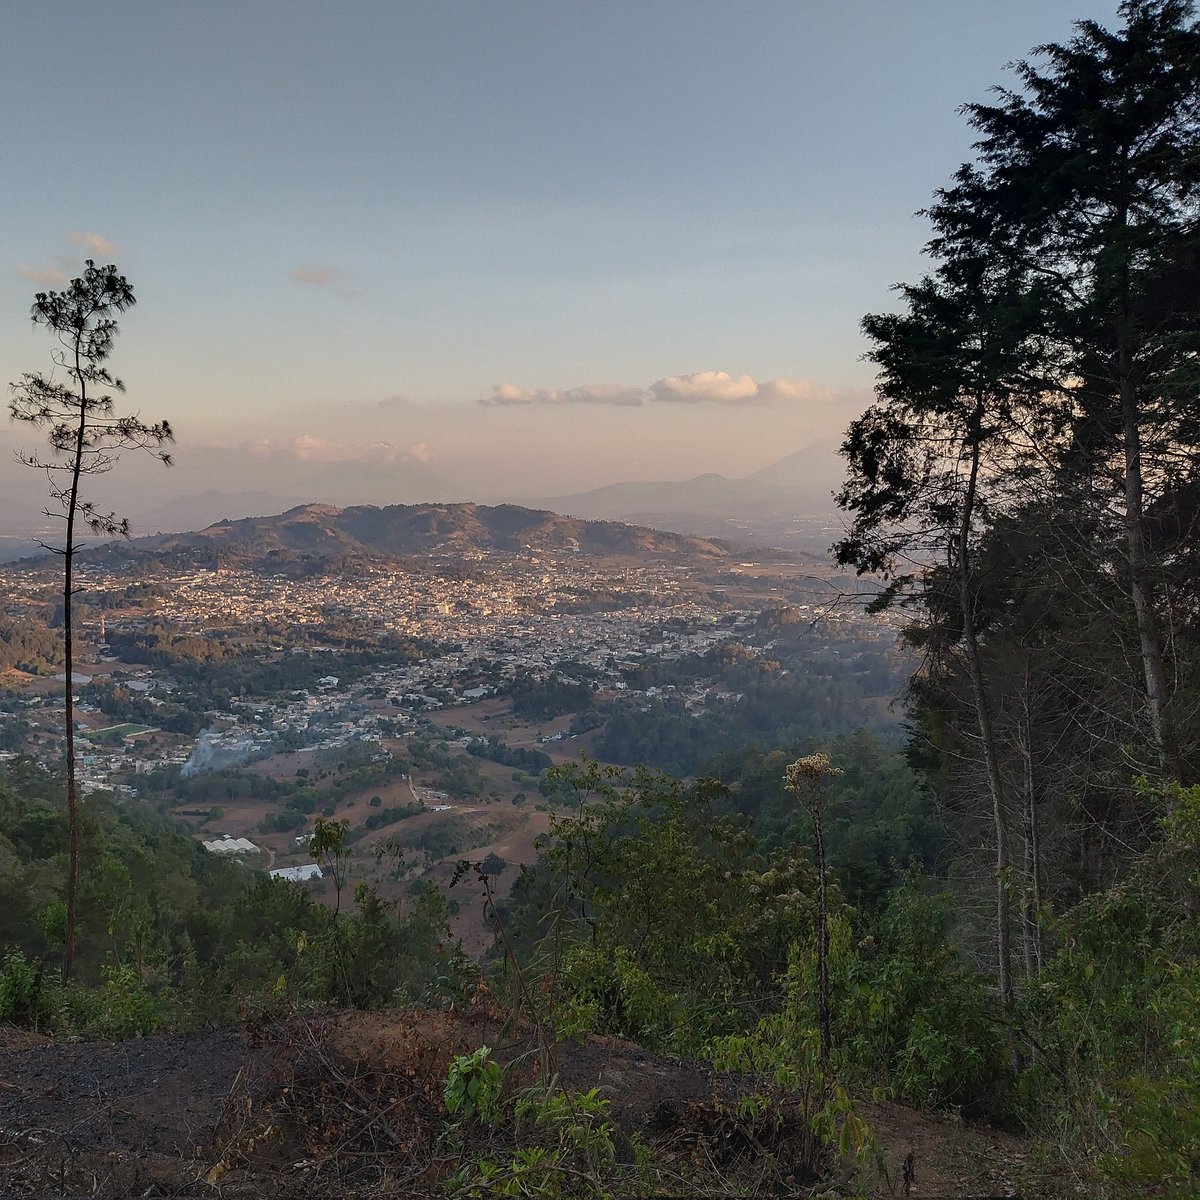 Hoy 19 de abril, a estás horas de la madrugada se está incendiando el Cerro Cupilaj en Comalapa 🥺. Fotografía tomada el lunes 15, que salí a correr traigo un sentimiento en el pecho 😭🥺.